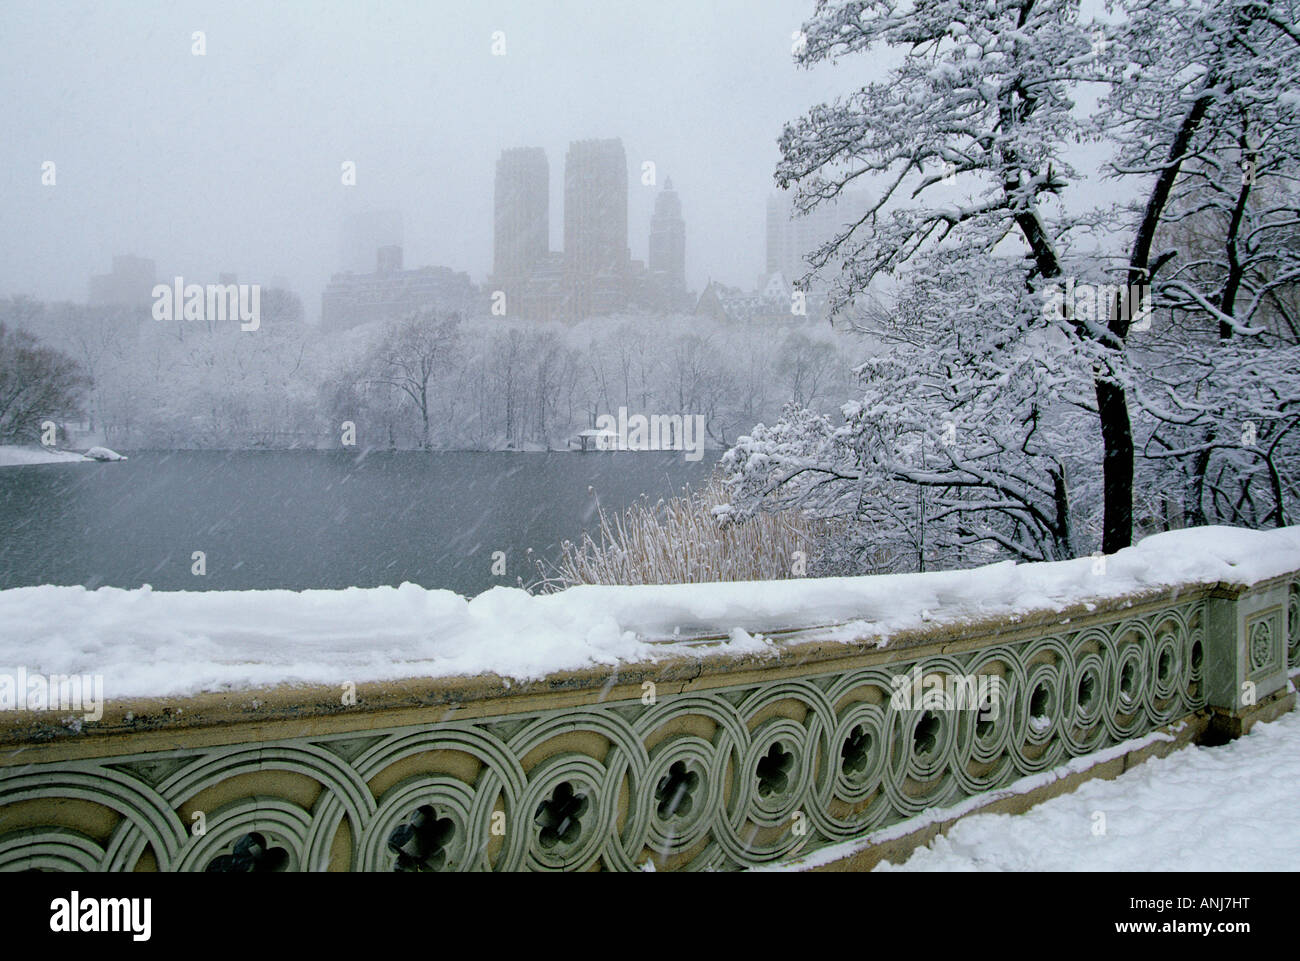 Bogenbrücke im Central Park New York. Schnee. Winterwetter Schneesturm. Manhattan Skyline des Central Park West in der Ferne. Schneebedeckte Bäume. USA Stockfoto